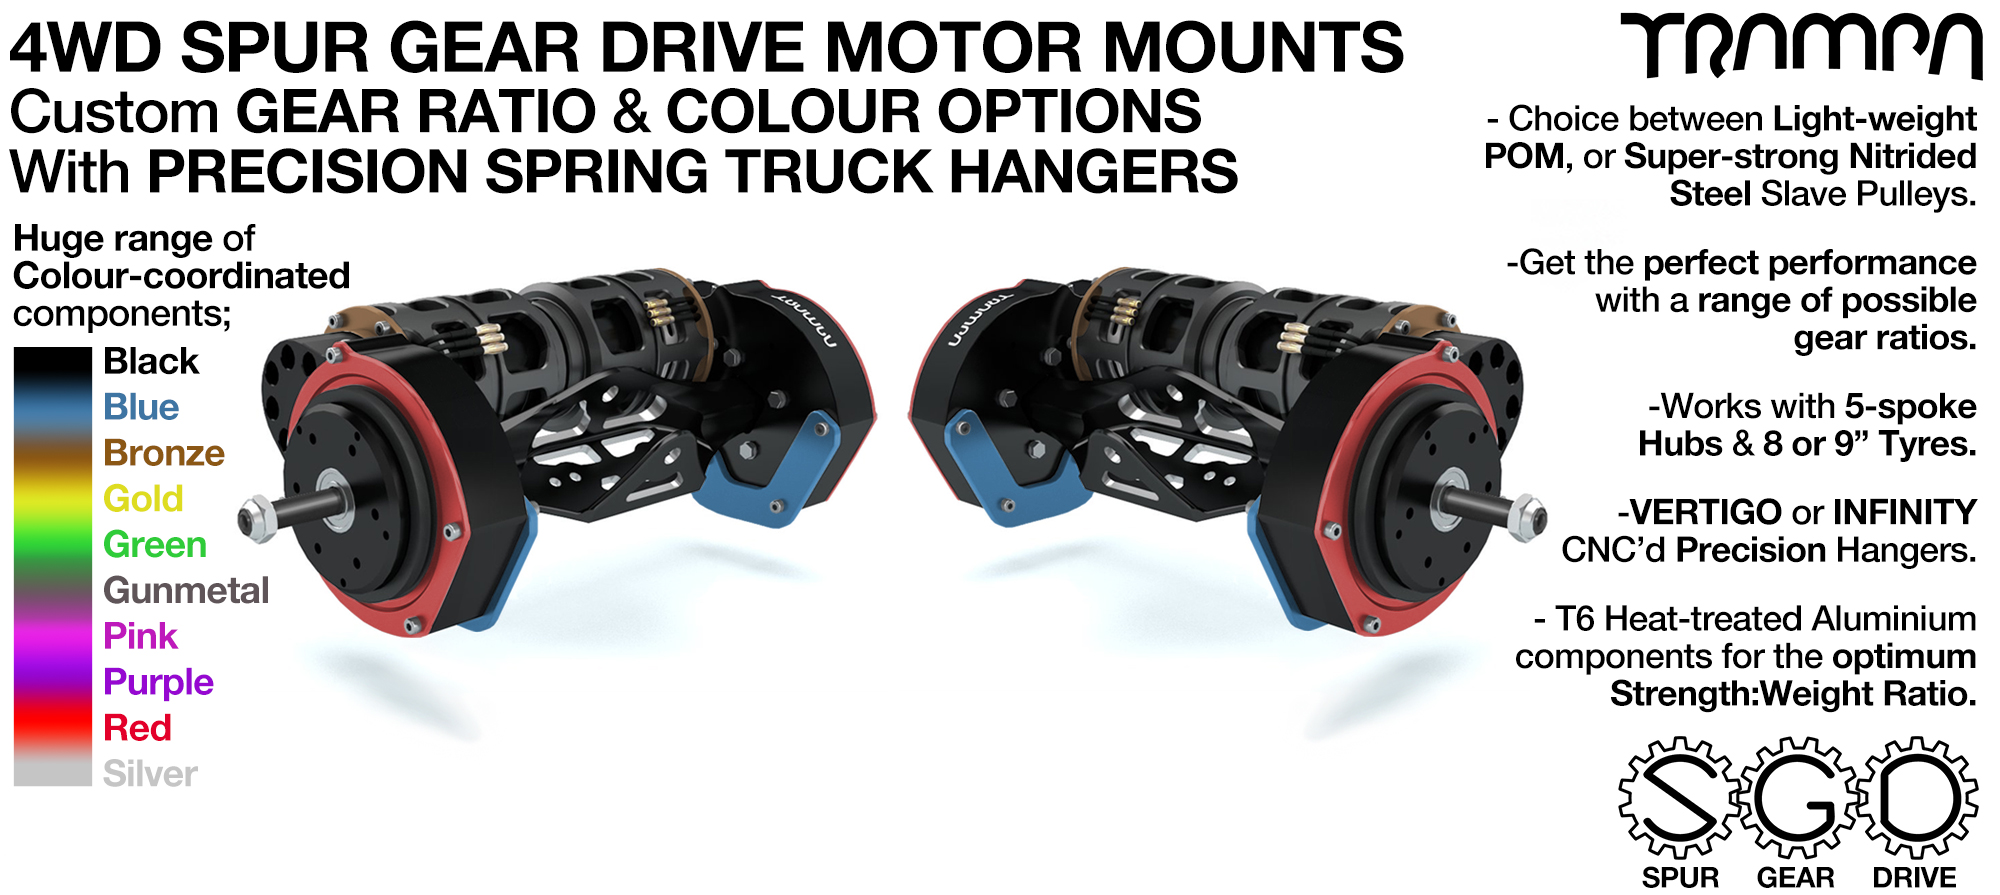 4WD Mountainboard Spur Gear Drive Motor Mounts on Hangers with Custom Motors